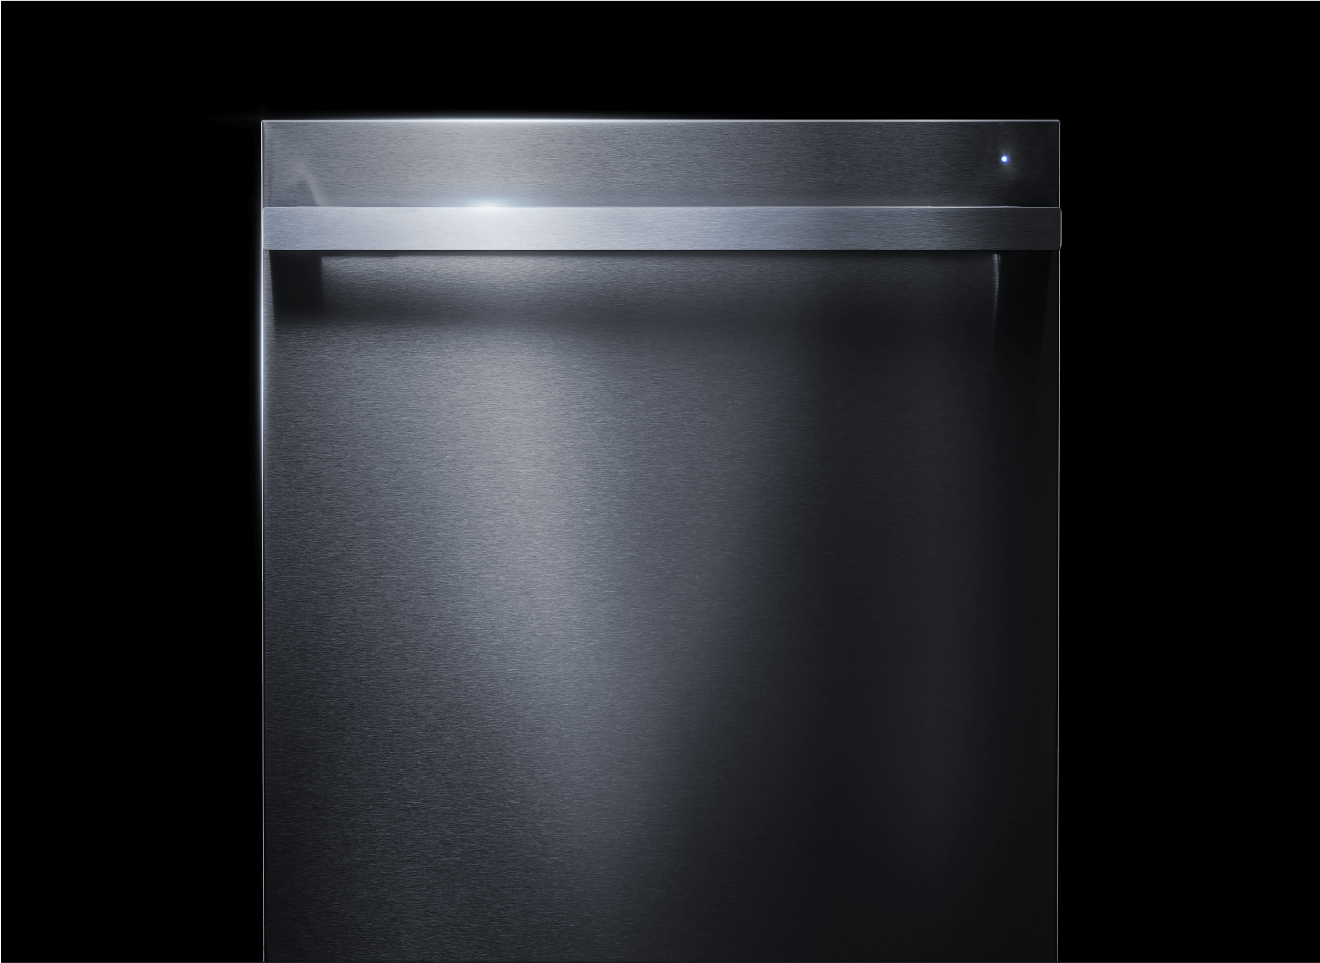 A NOIR™ Design Dishwasher.